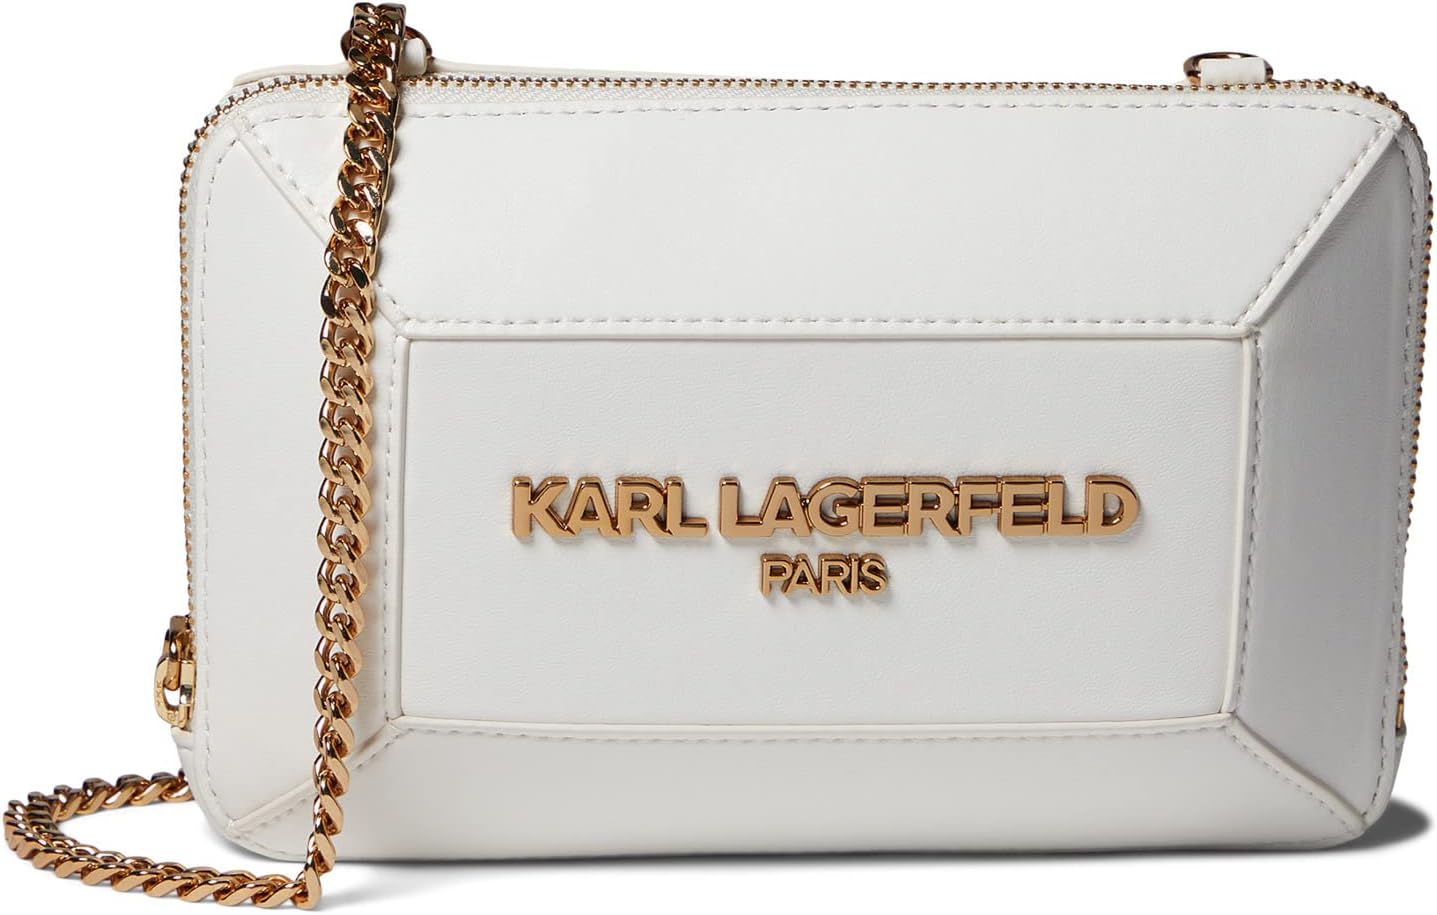 Маленькая сумка через плечо Georgette Karl Lagerfeld Paris, цвет Winter White маленькая сумка через плечо lafayette karl lagerfeld paris цвет charcoal